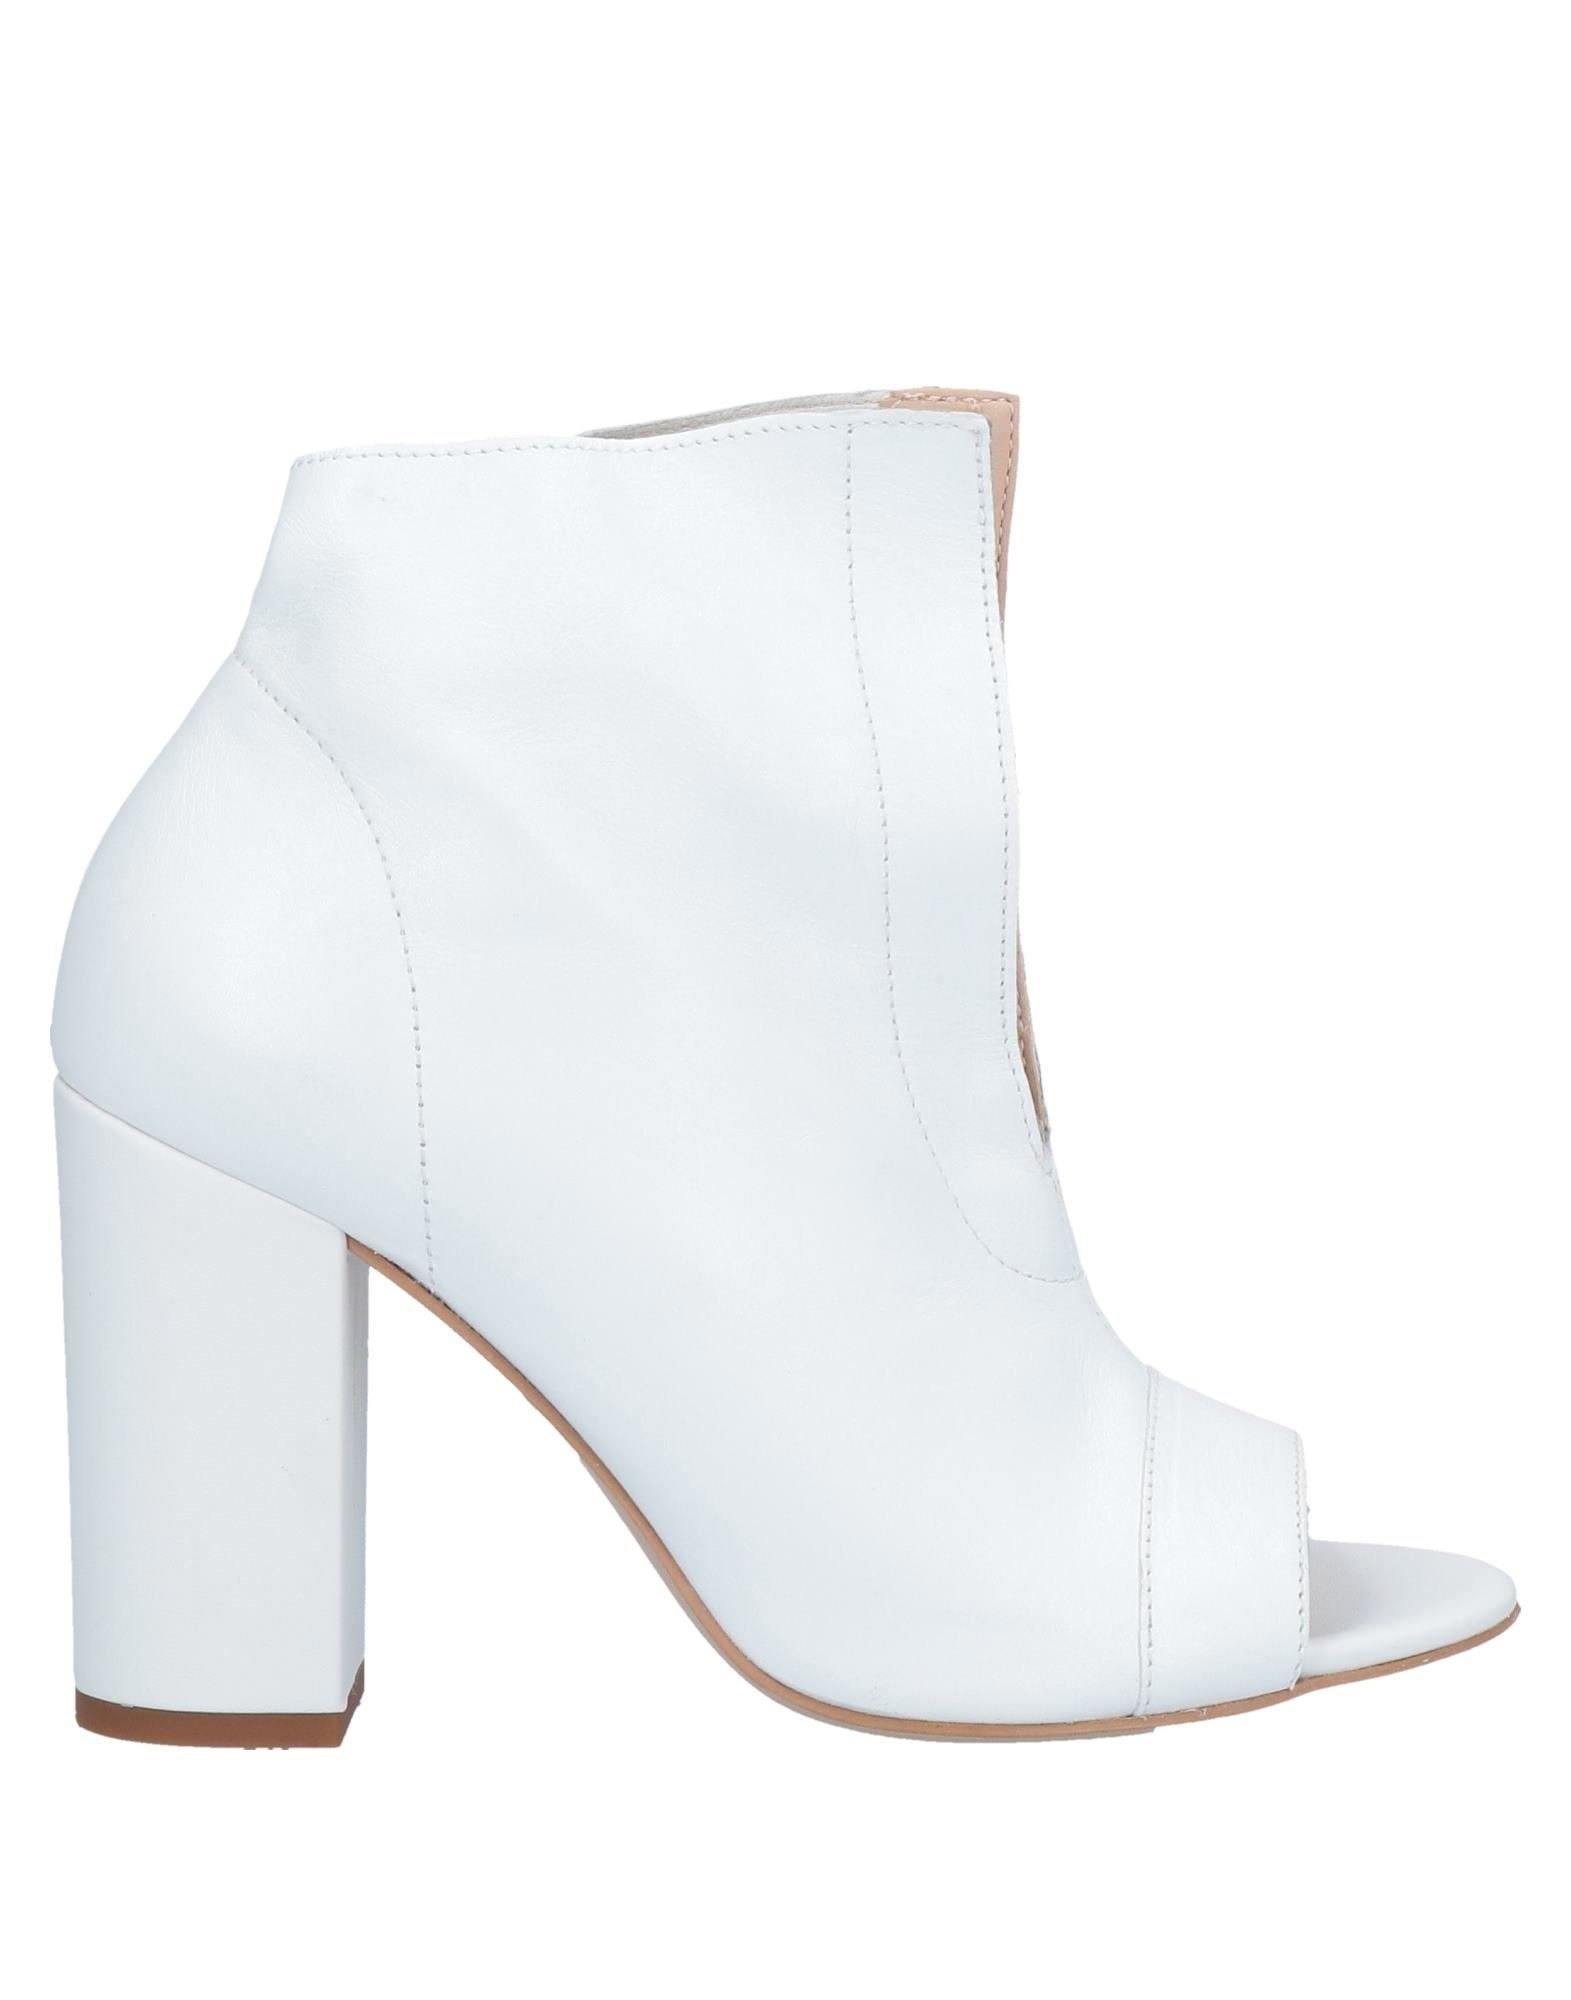 Loretta Pettinari Ankle Boots In White